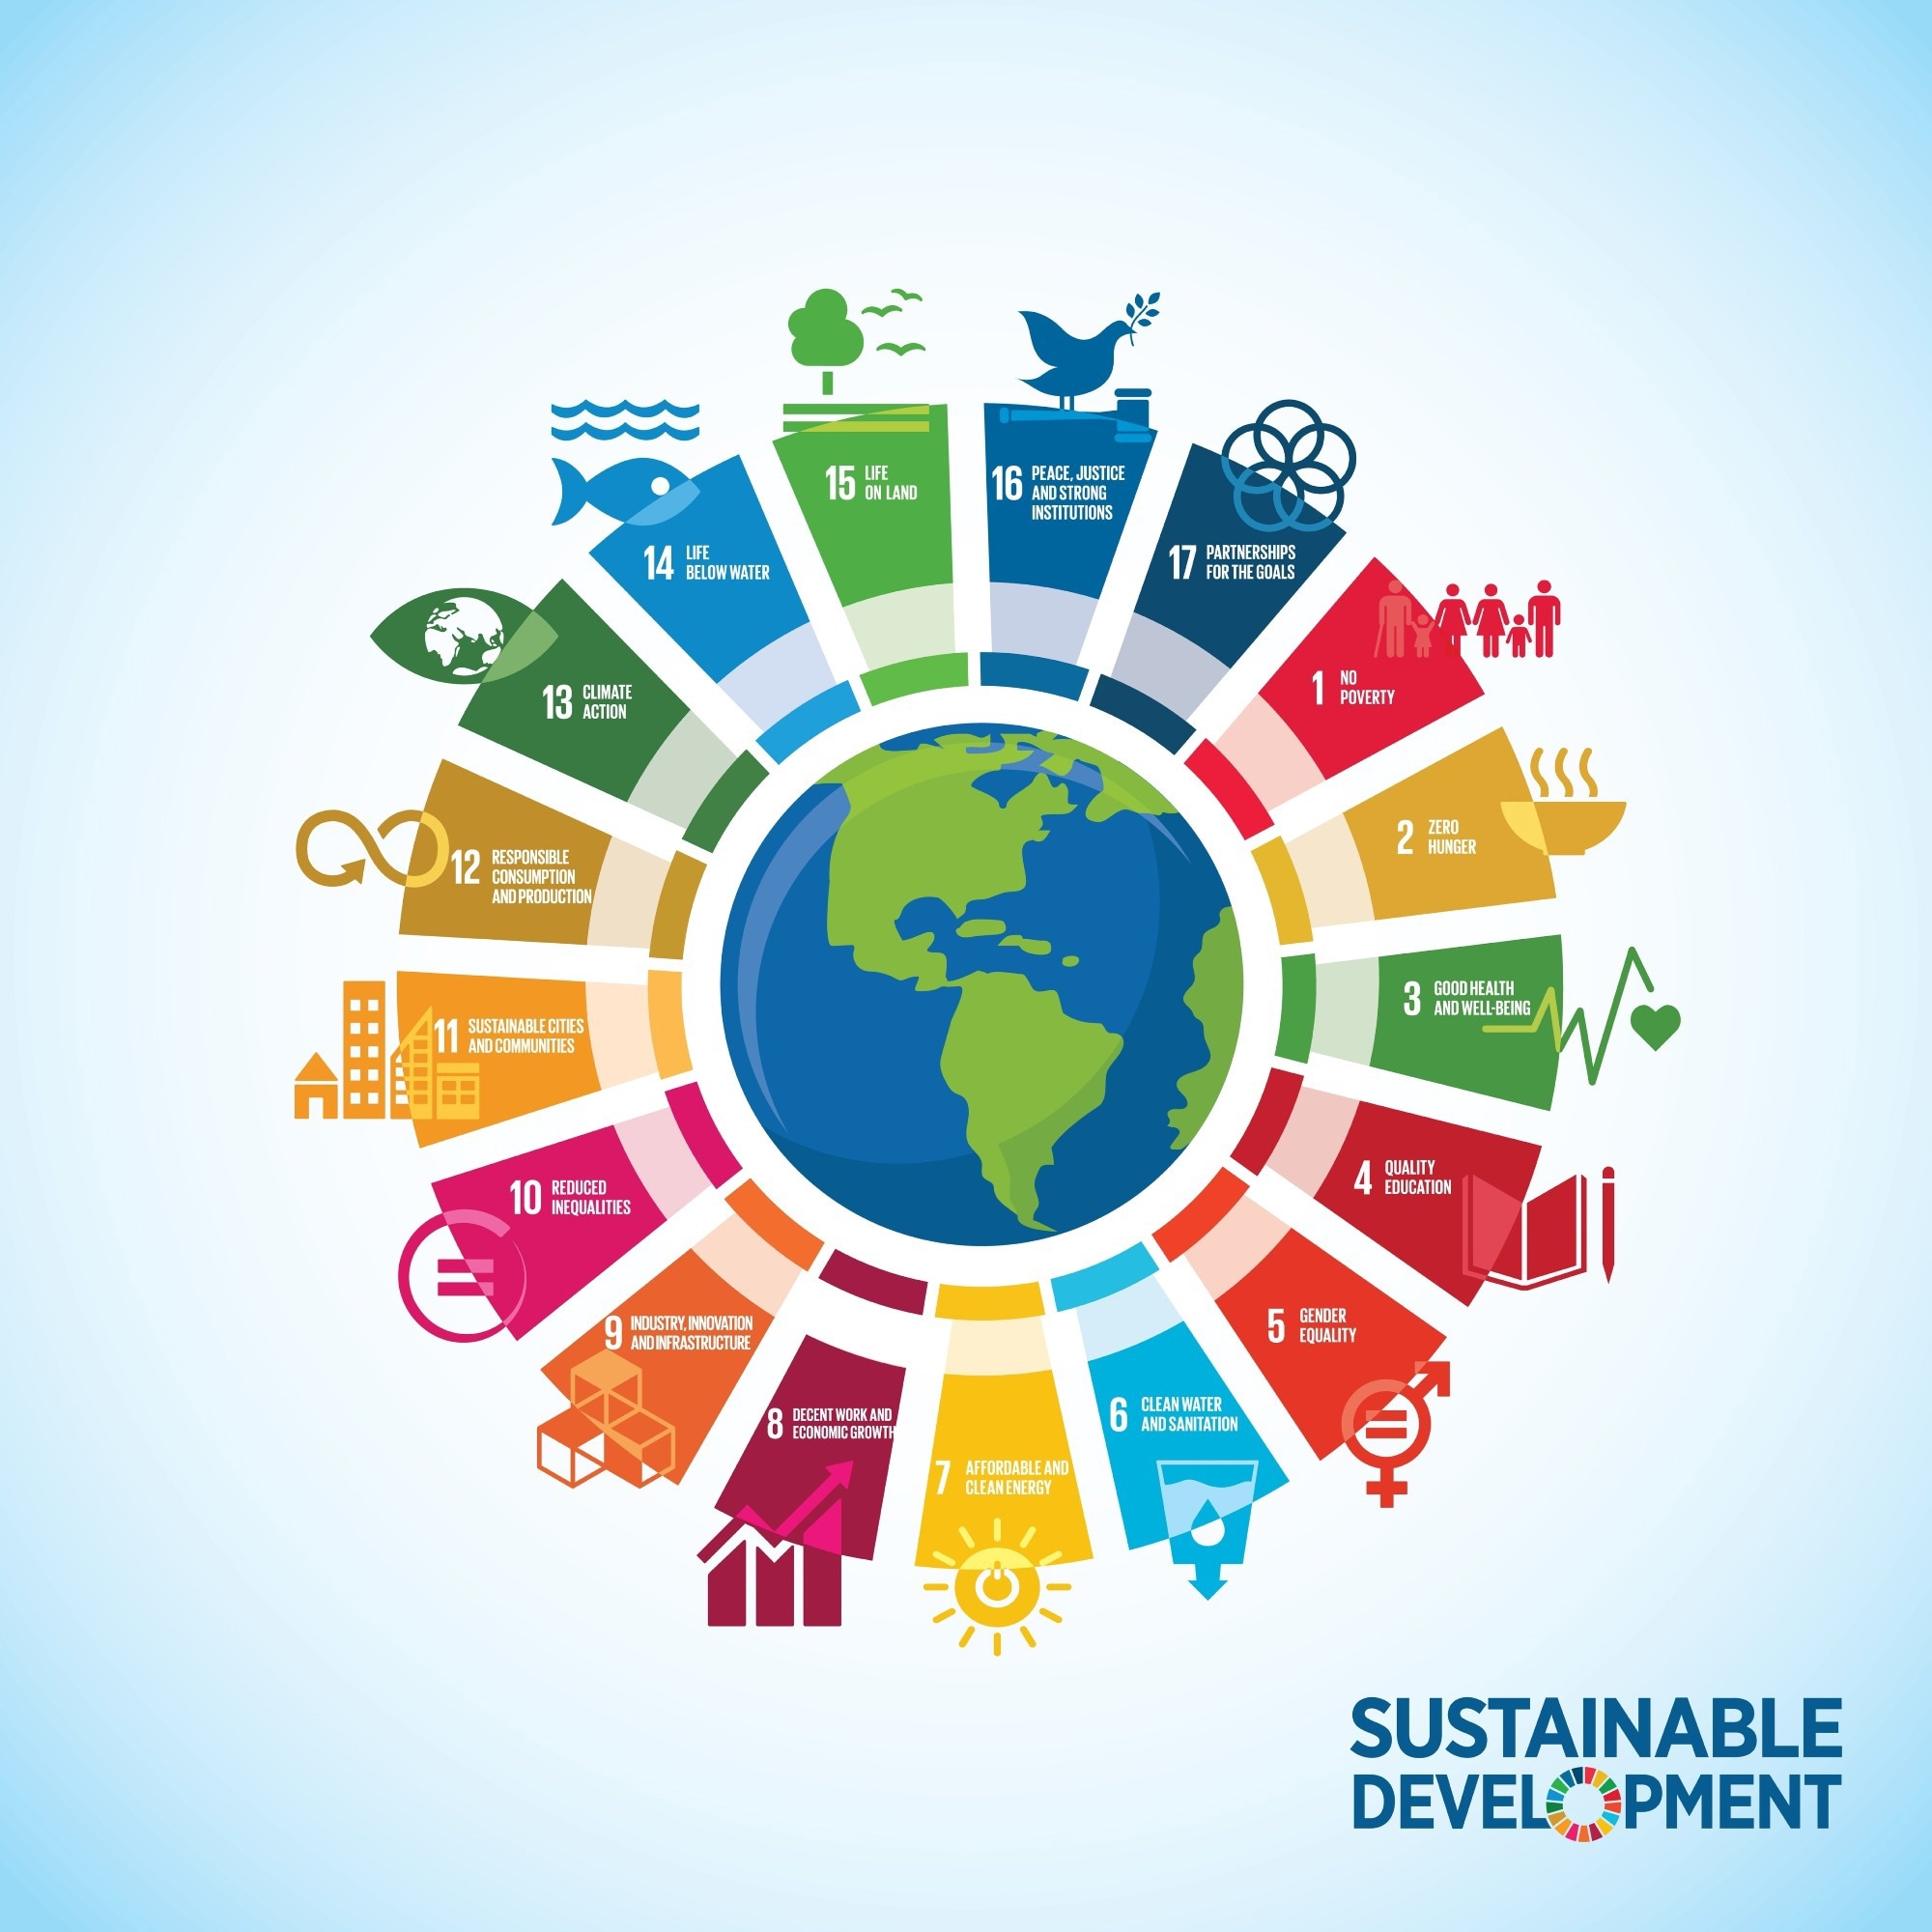 联合国机构驻南非的倡议——实现变革的环境变化。